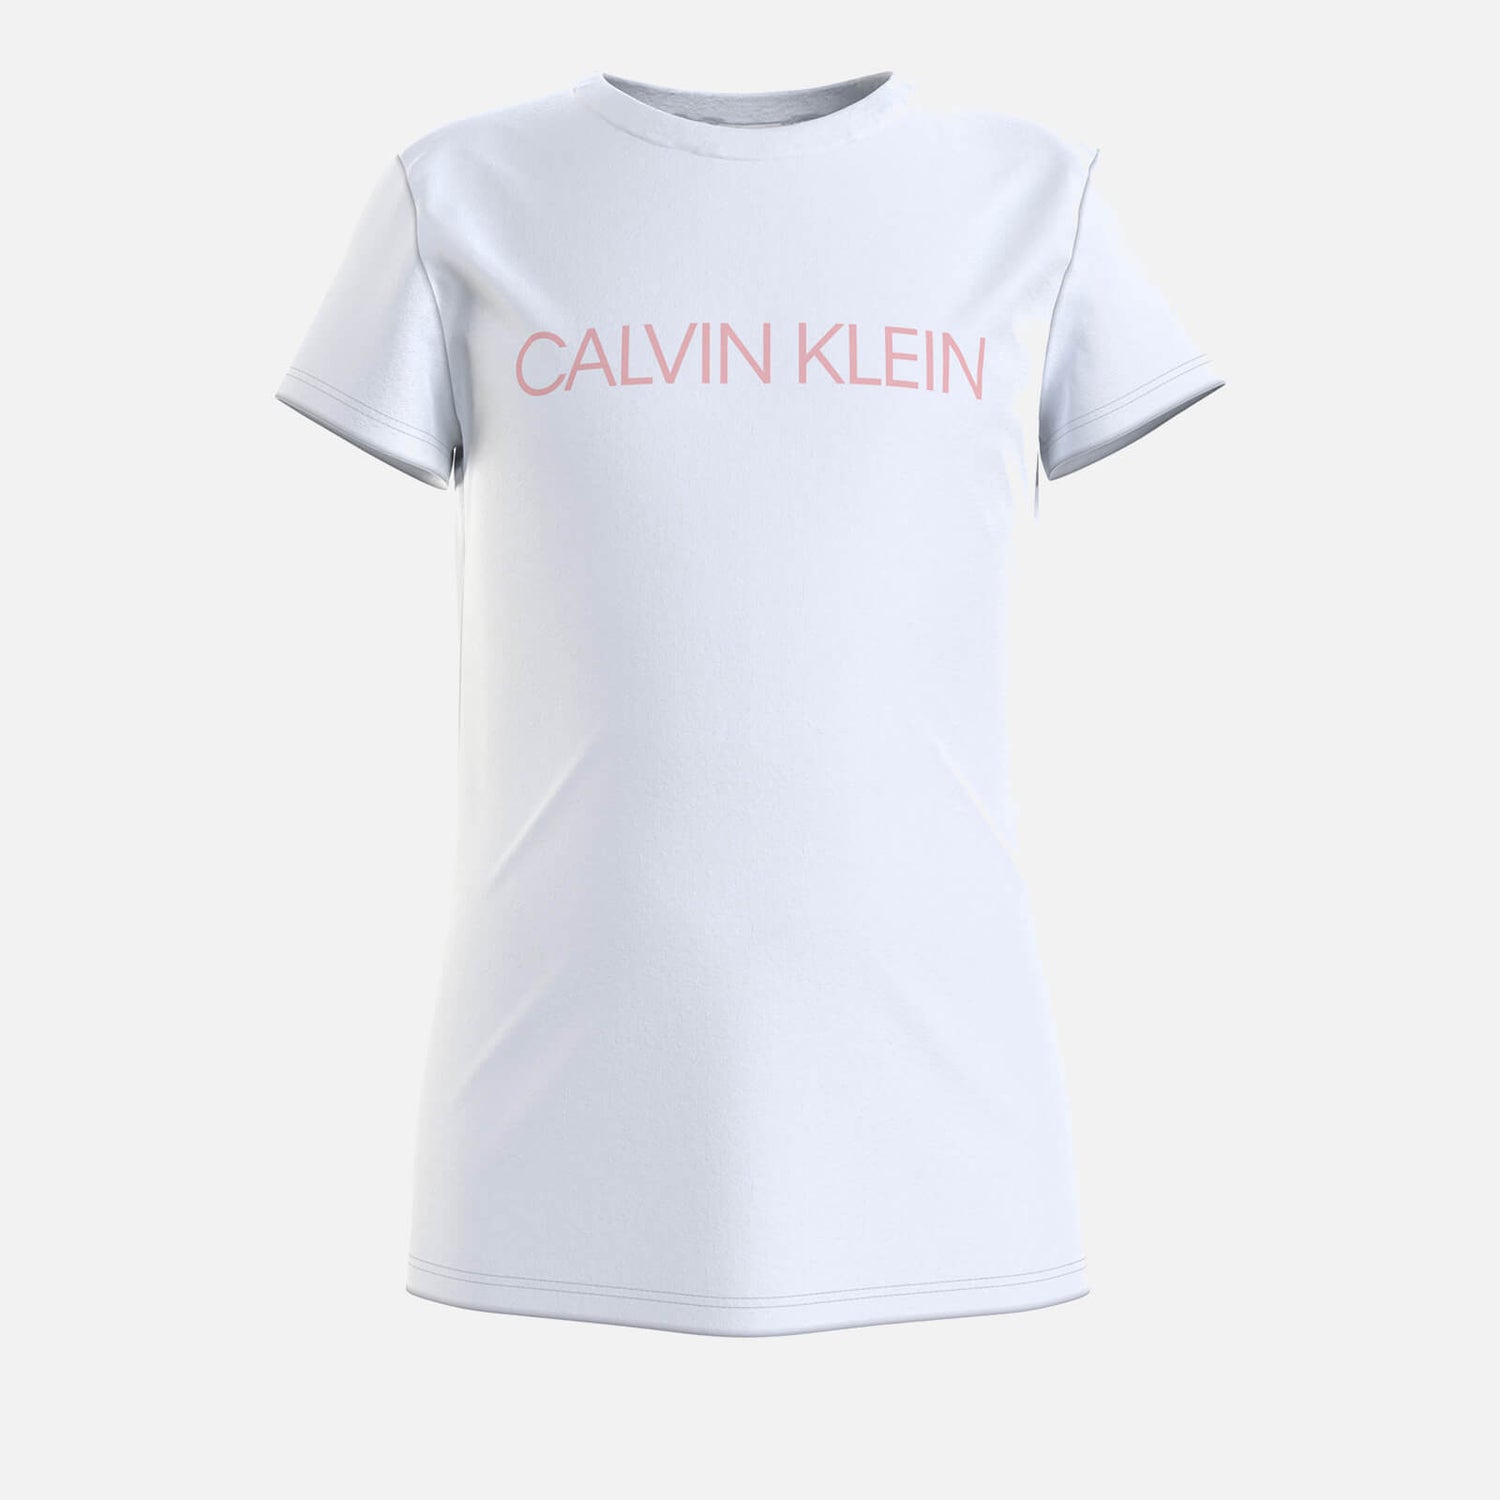 Calvin Klein Jeans Girl's Institutional Slim T-Shirt - White/Sand Rose